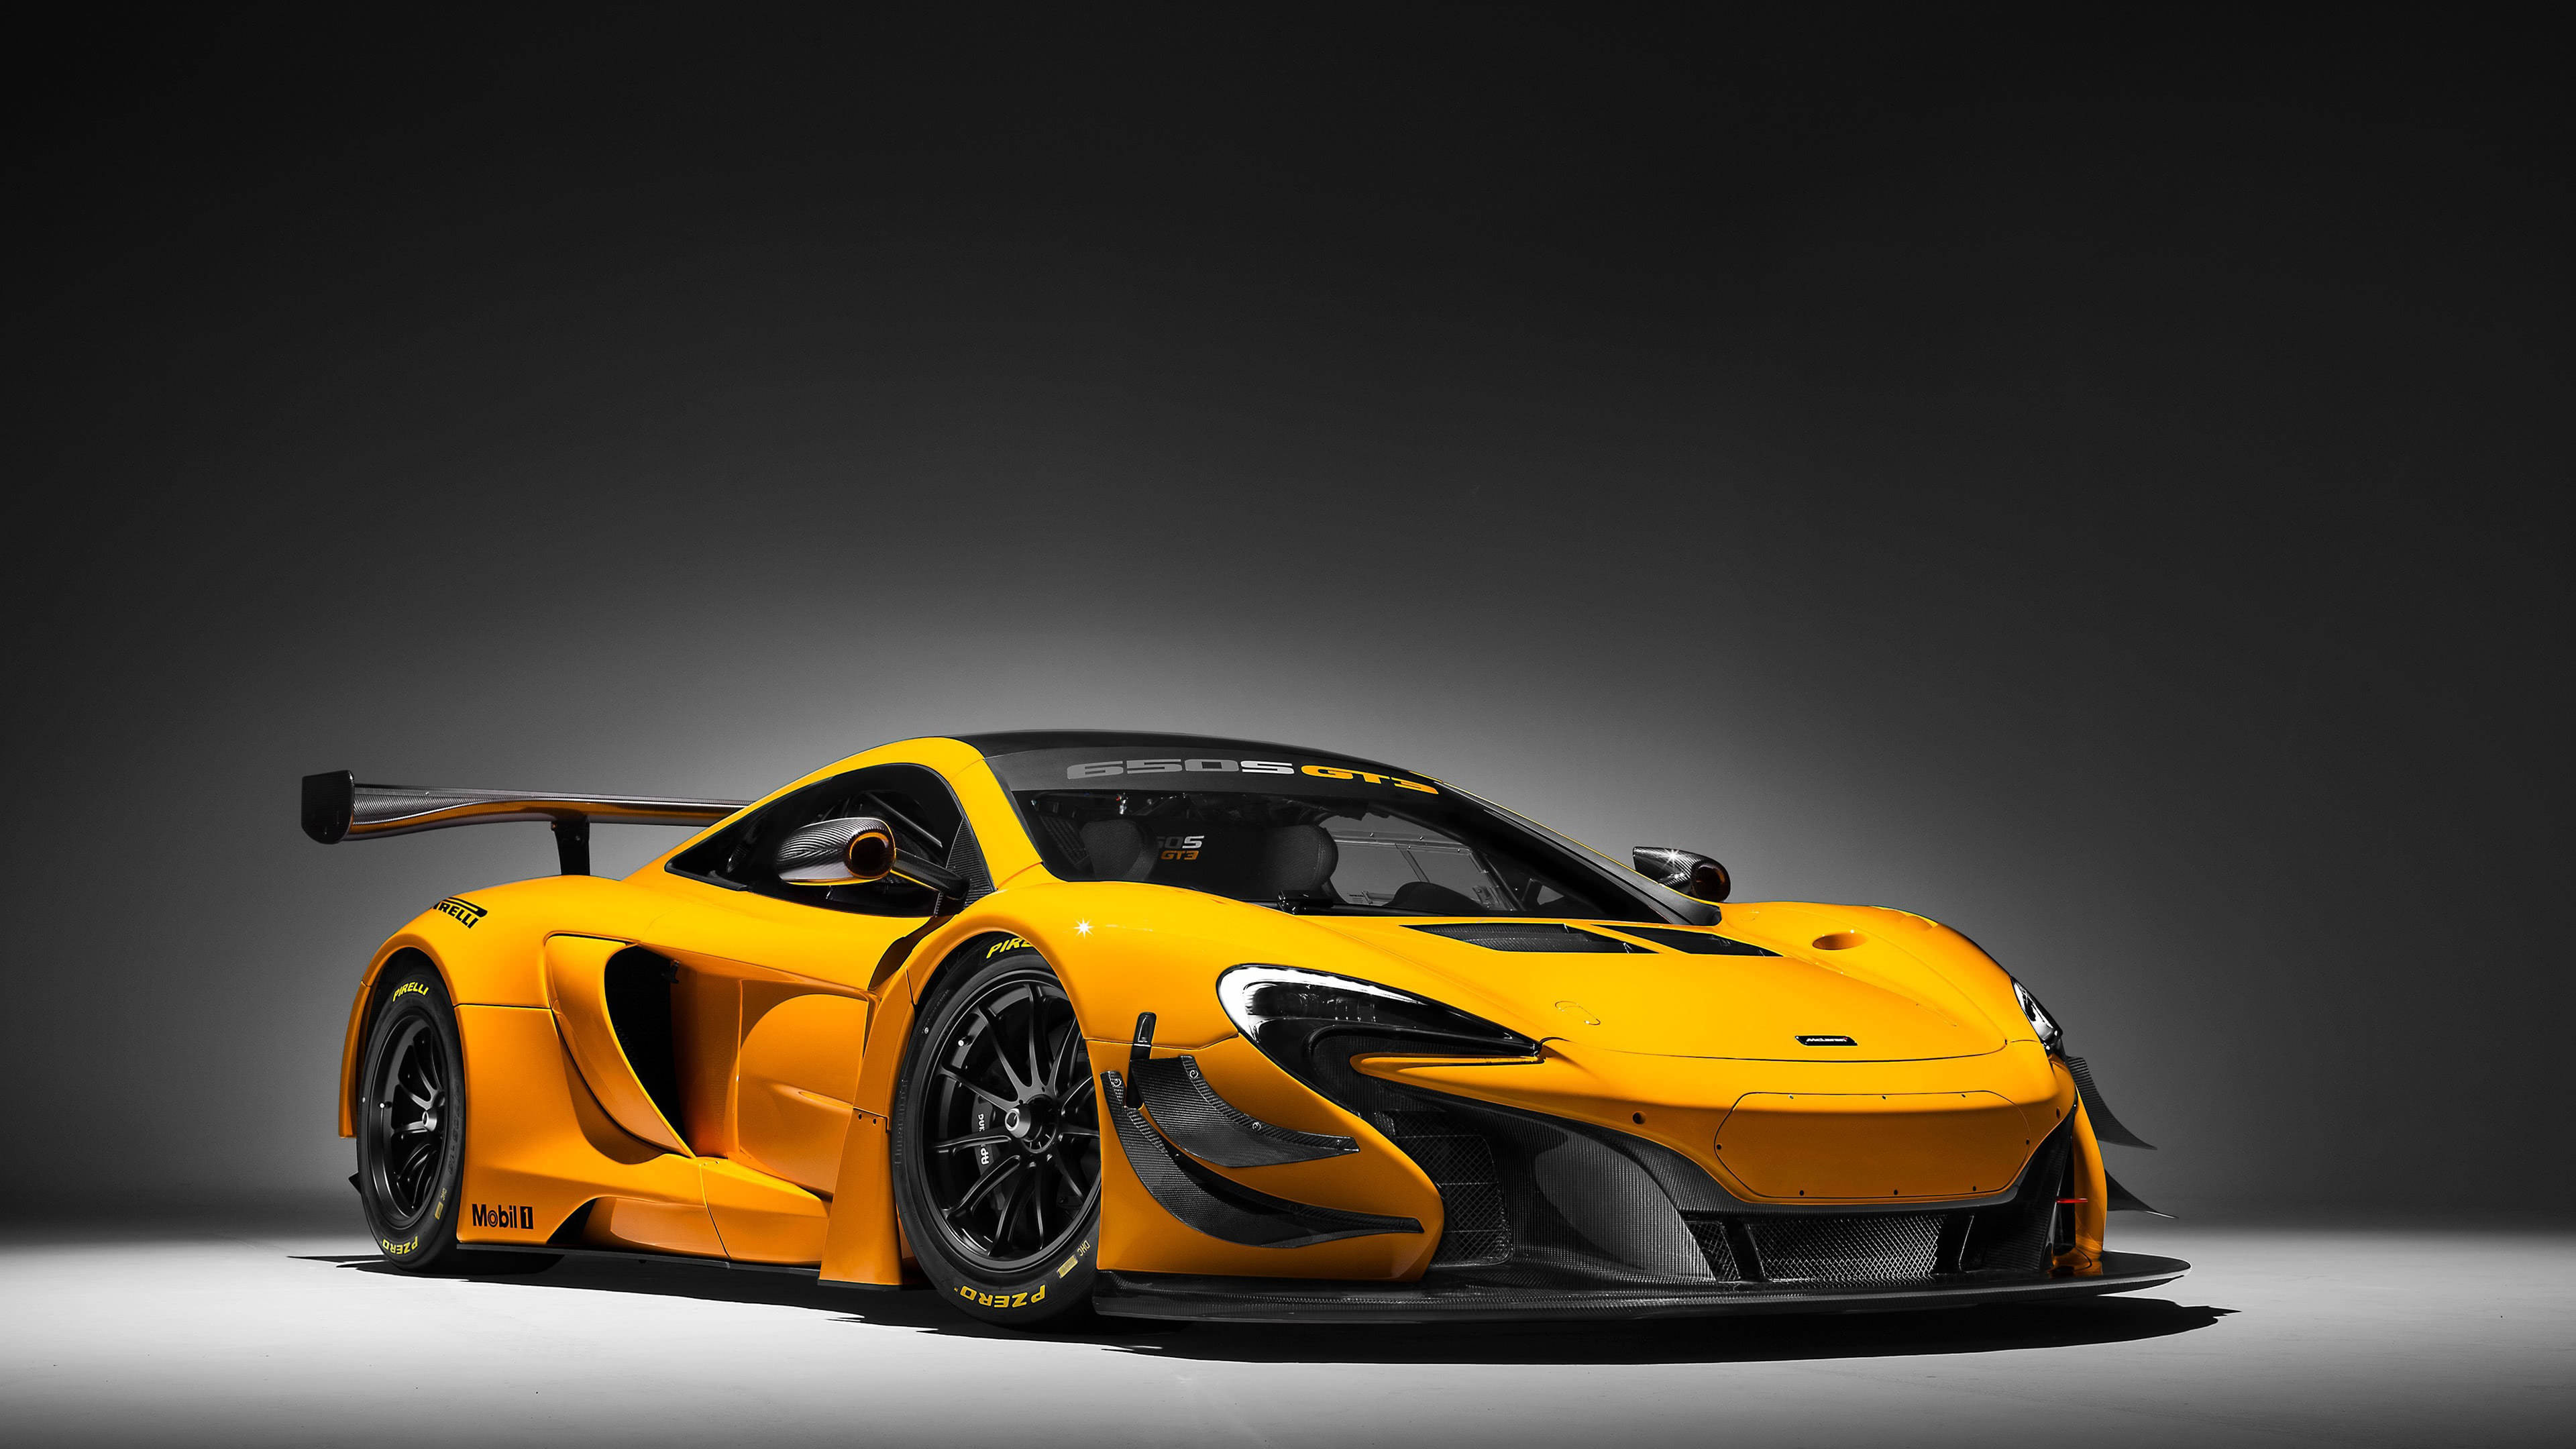 McLaren 650S, GT3 race car, Ultra HD 4K resolution, Sleek design, 3840x2160 4K Desktop